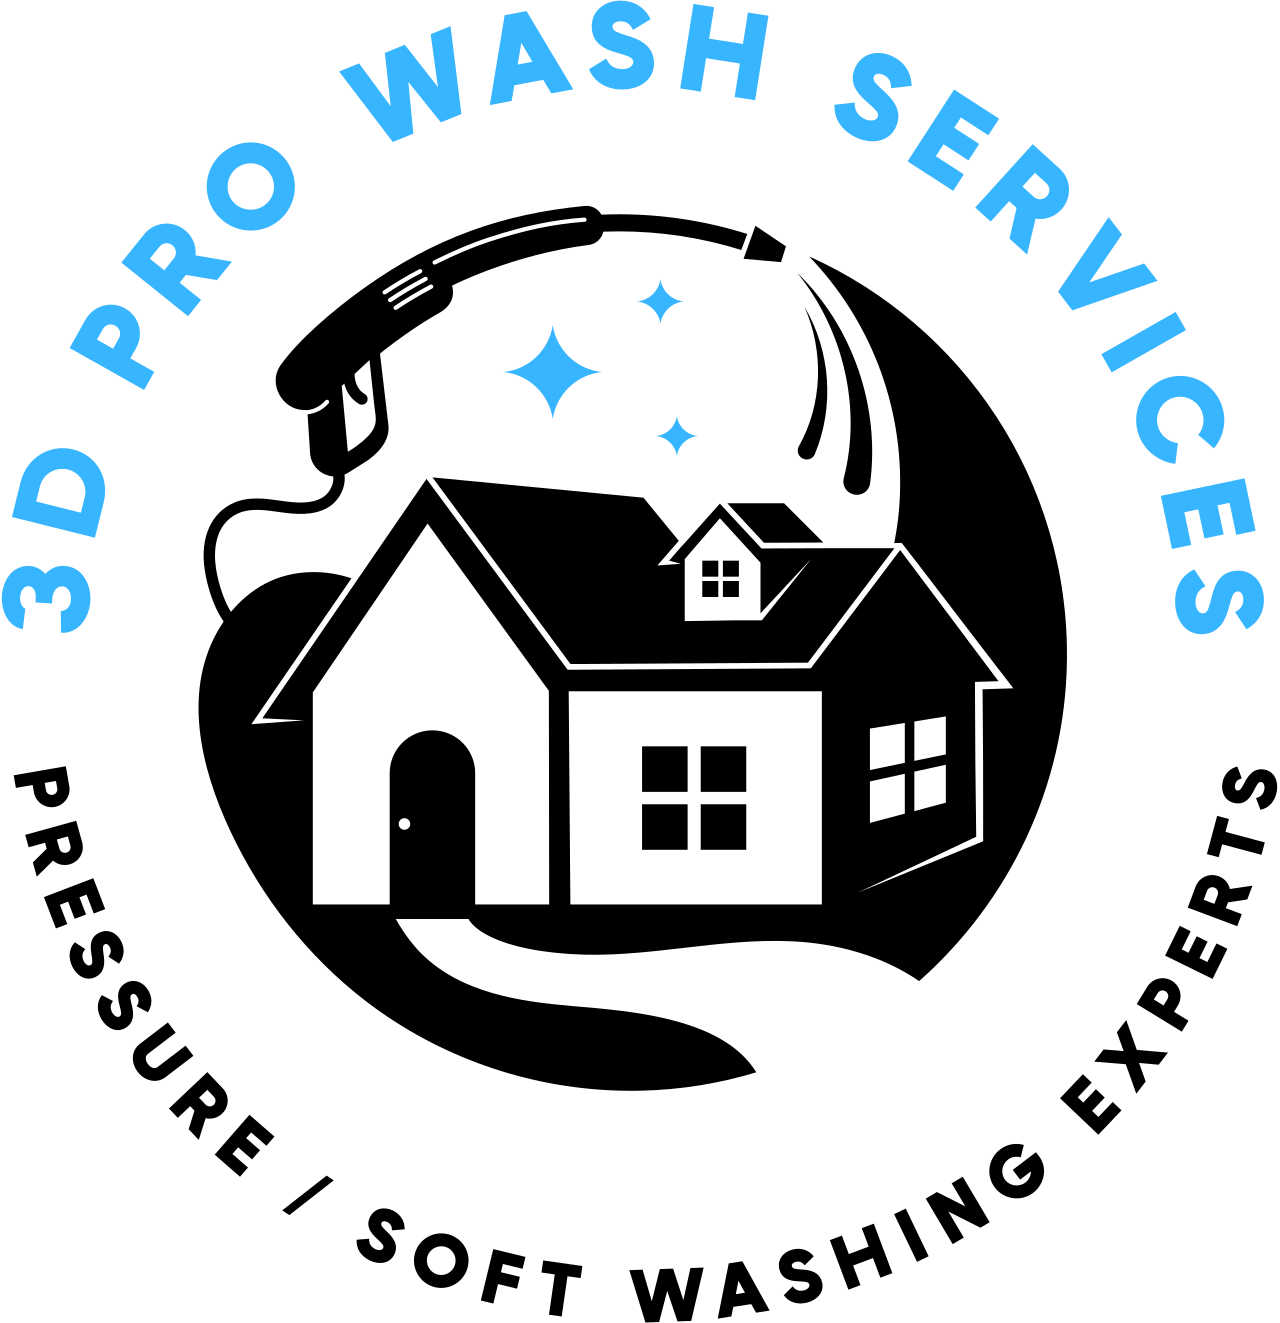 3D PRO WASH SERVICES's logo